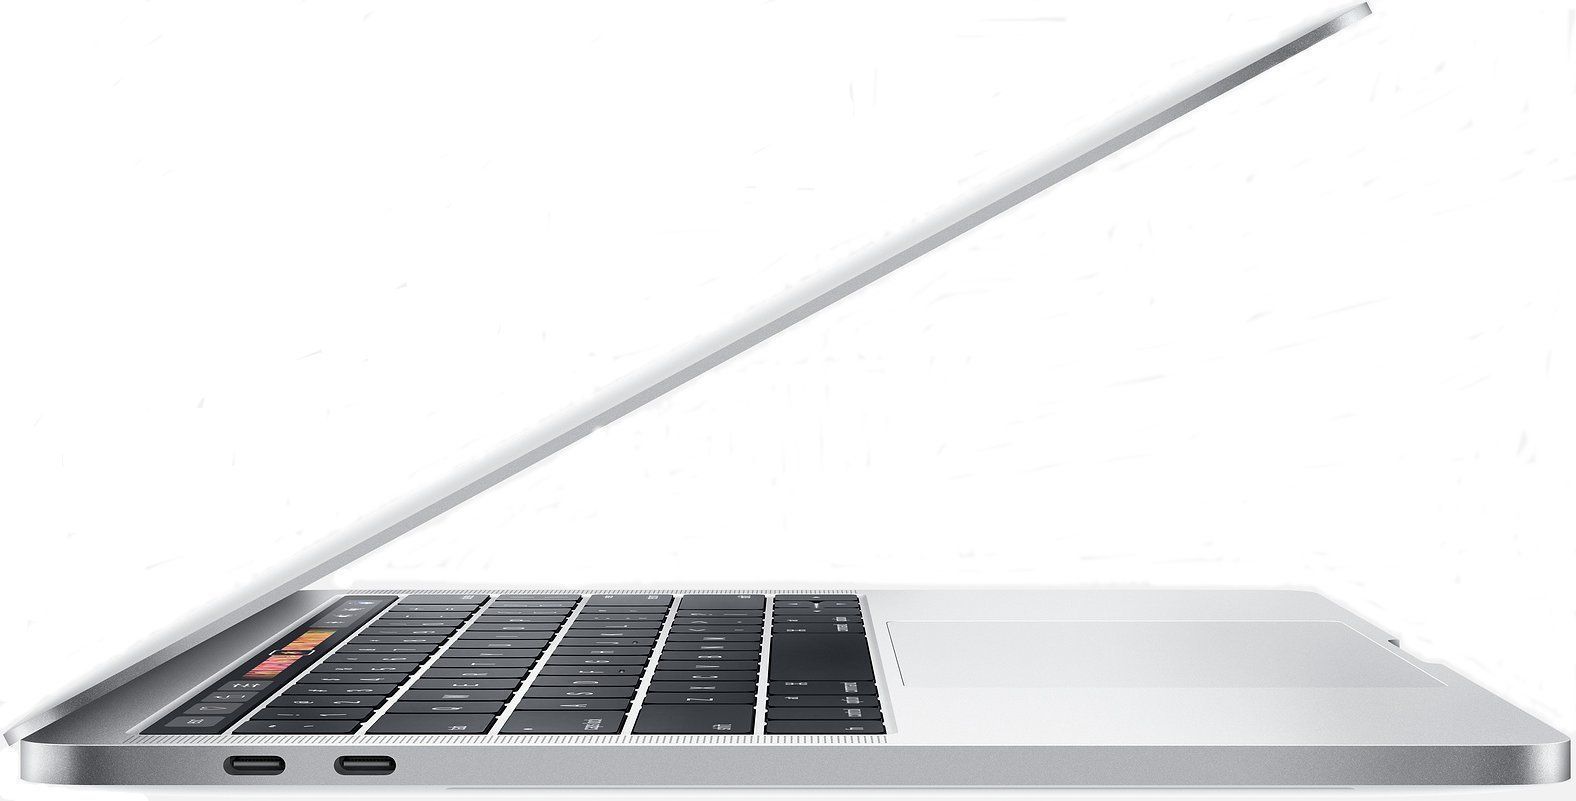 MacBook Pro 15 pouces avec Touch Bar